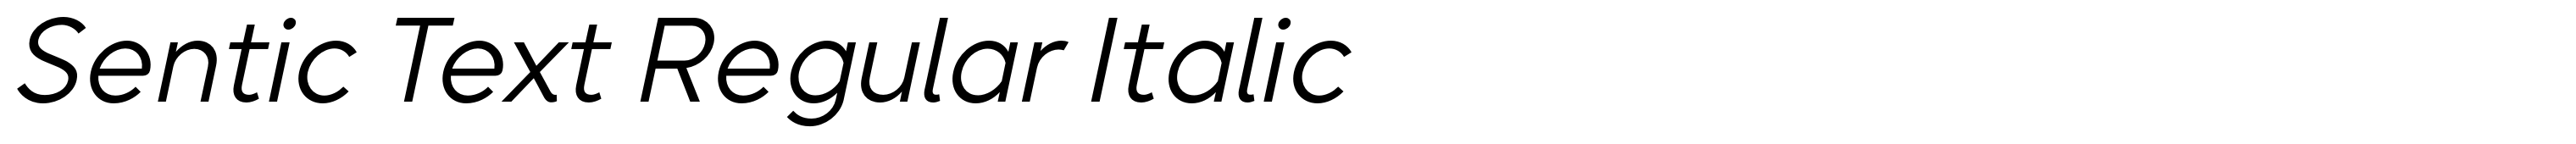 Sentic Text Regular Italic